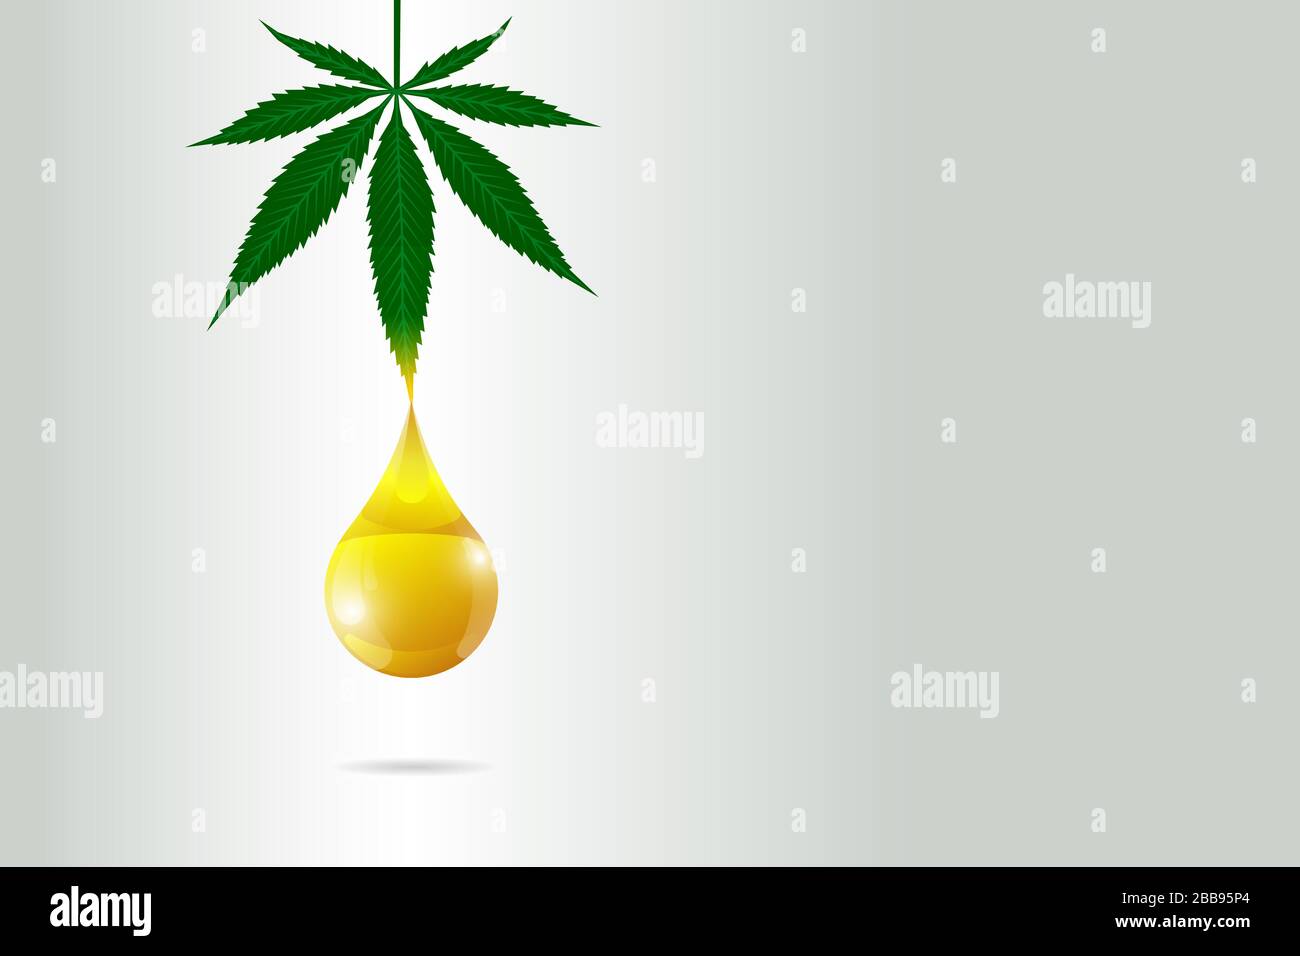 CBD olio di canapa di cannabis medica poster concetto. Marijuana foglia estratto goccia naturale prodotto etichetta modello di progettazione. Illustrazione eps vettoriale Illustrazione Vettoriale